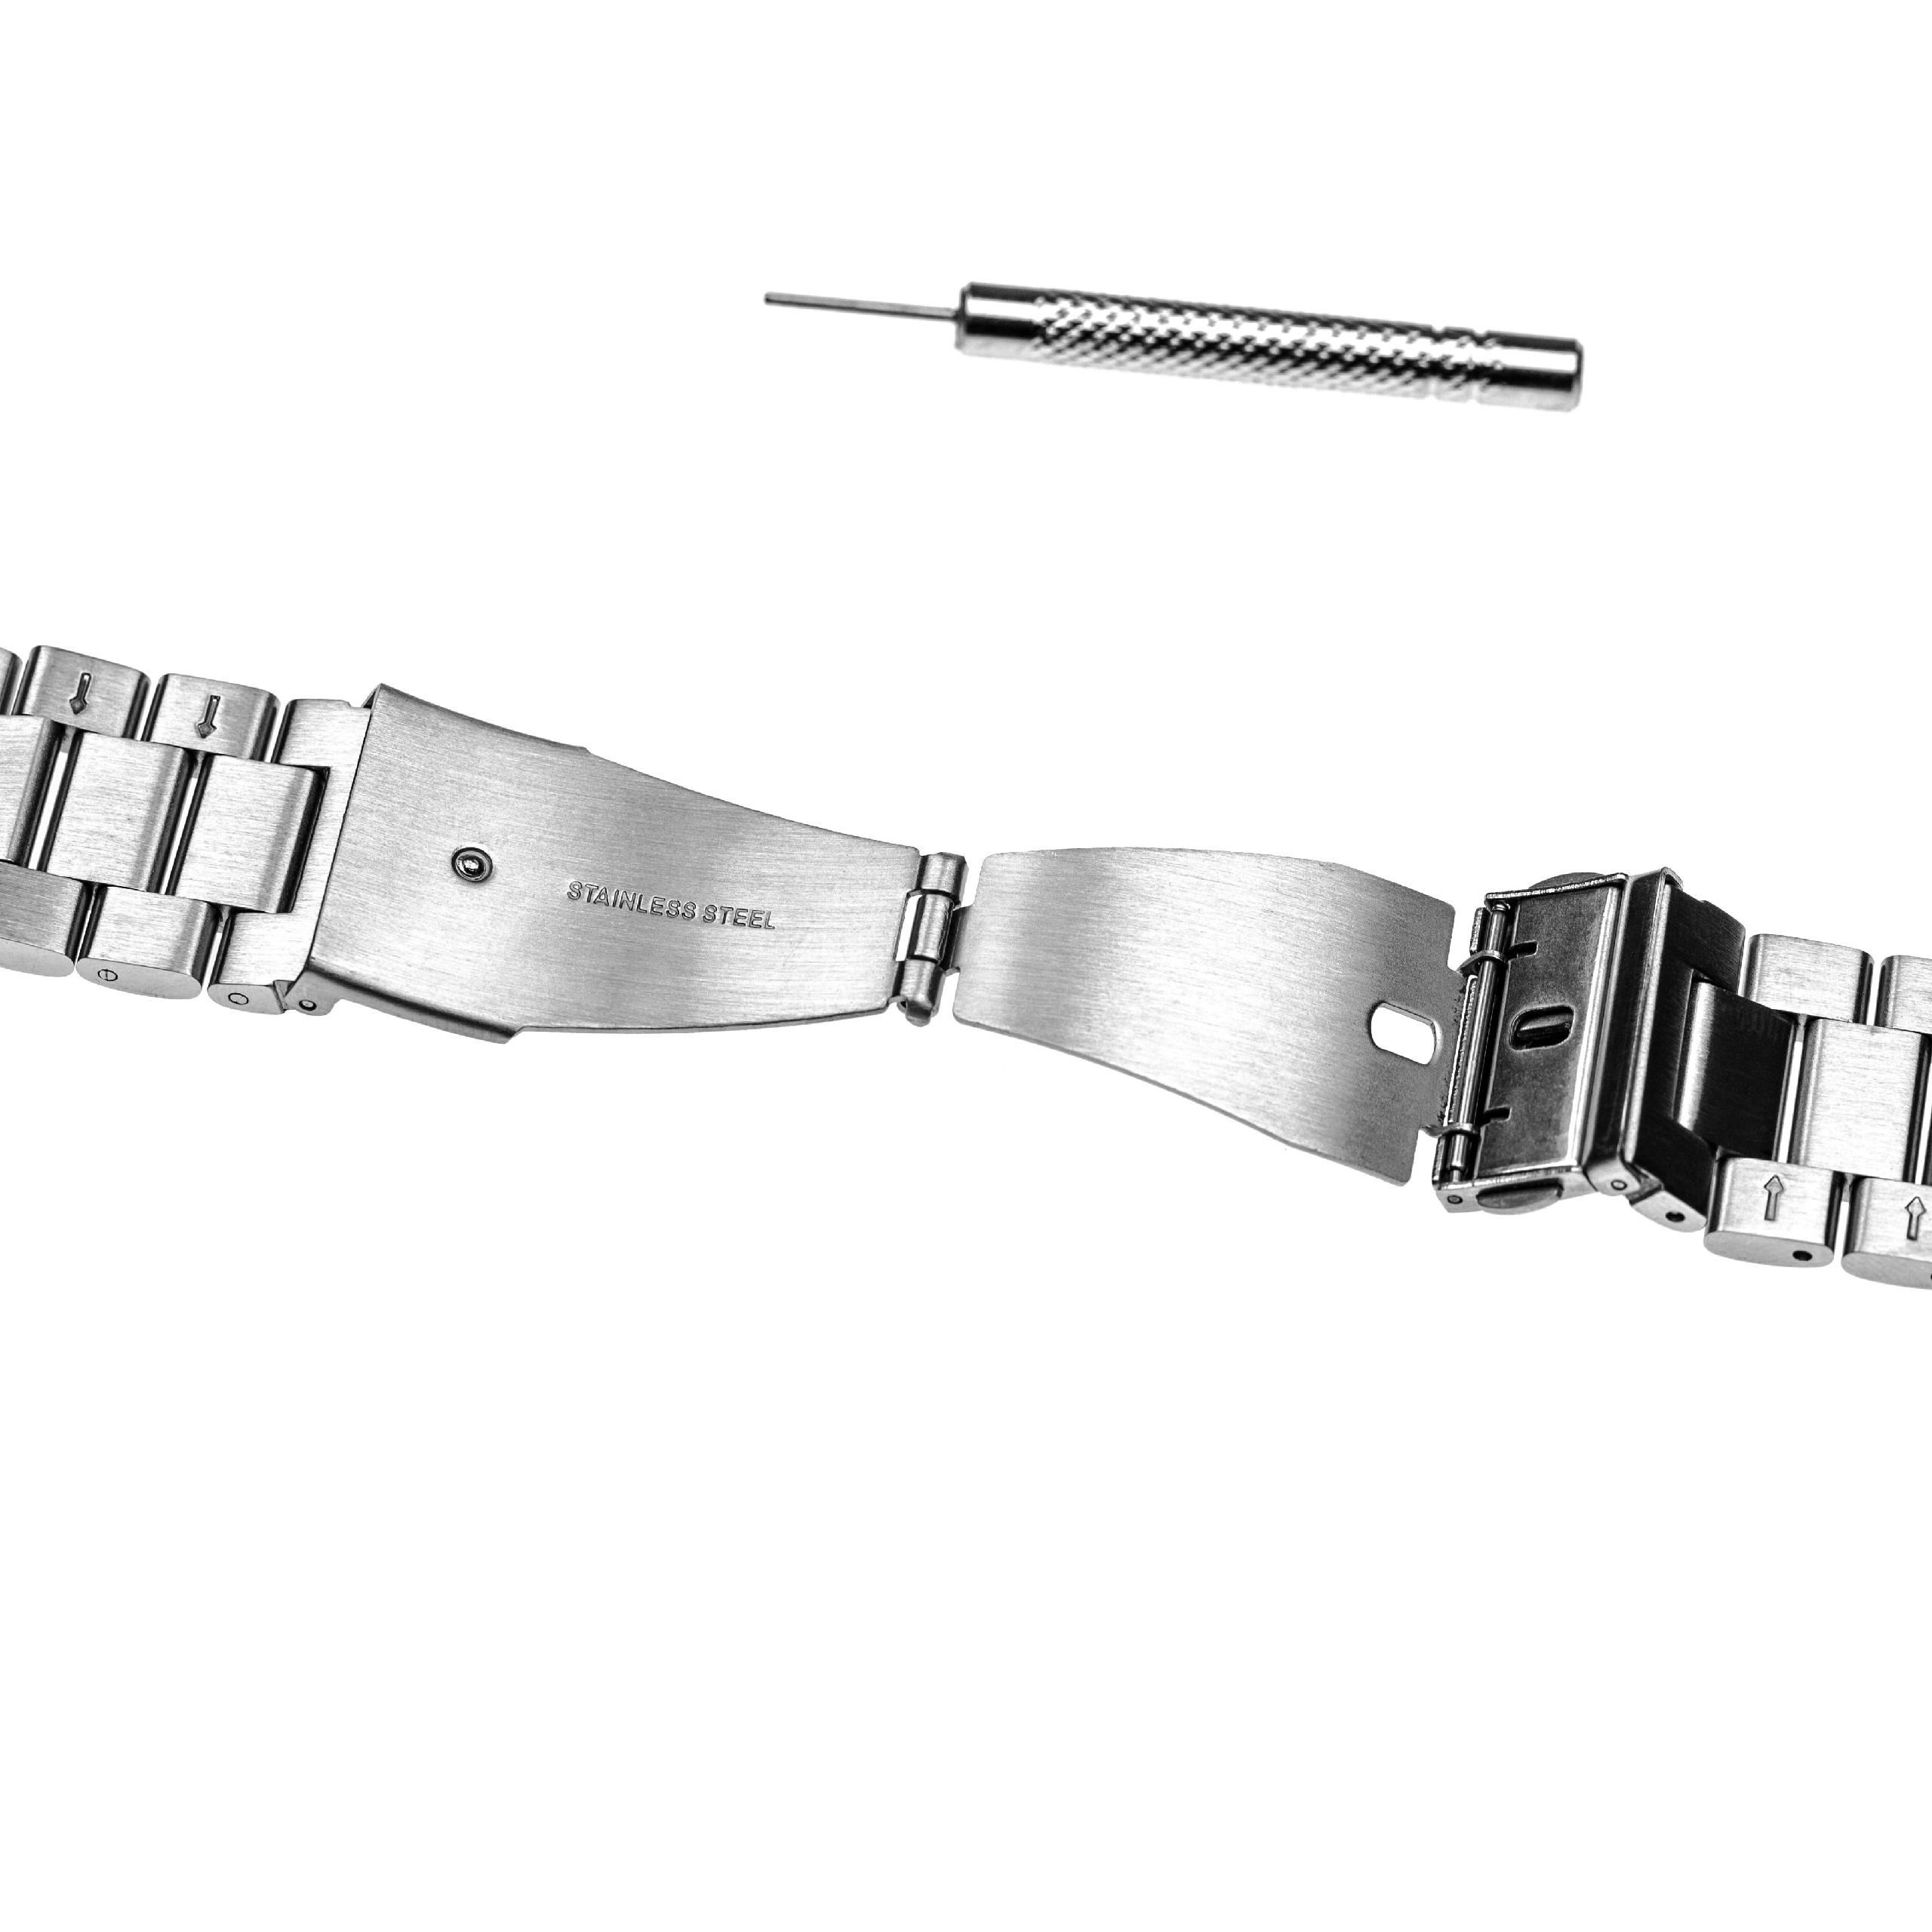 Pasek do smartwatch Garmin Fenix - dł. 20,4 cm, szer. 26 mm, stal nierdzewna, srebrny